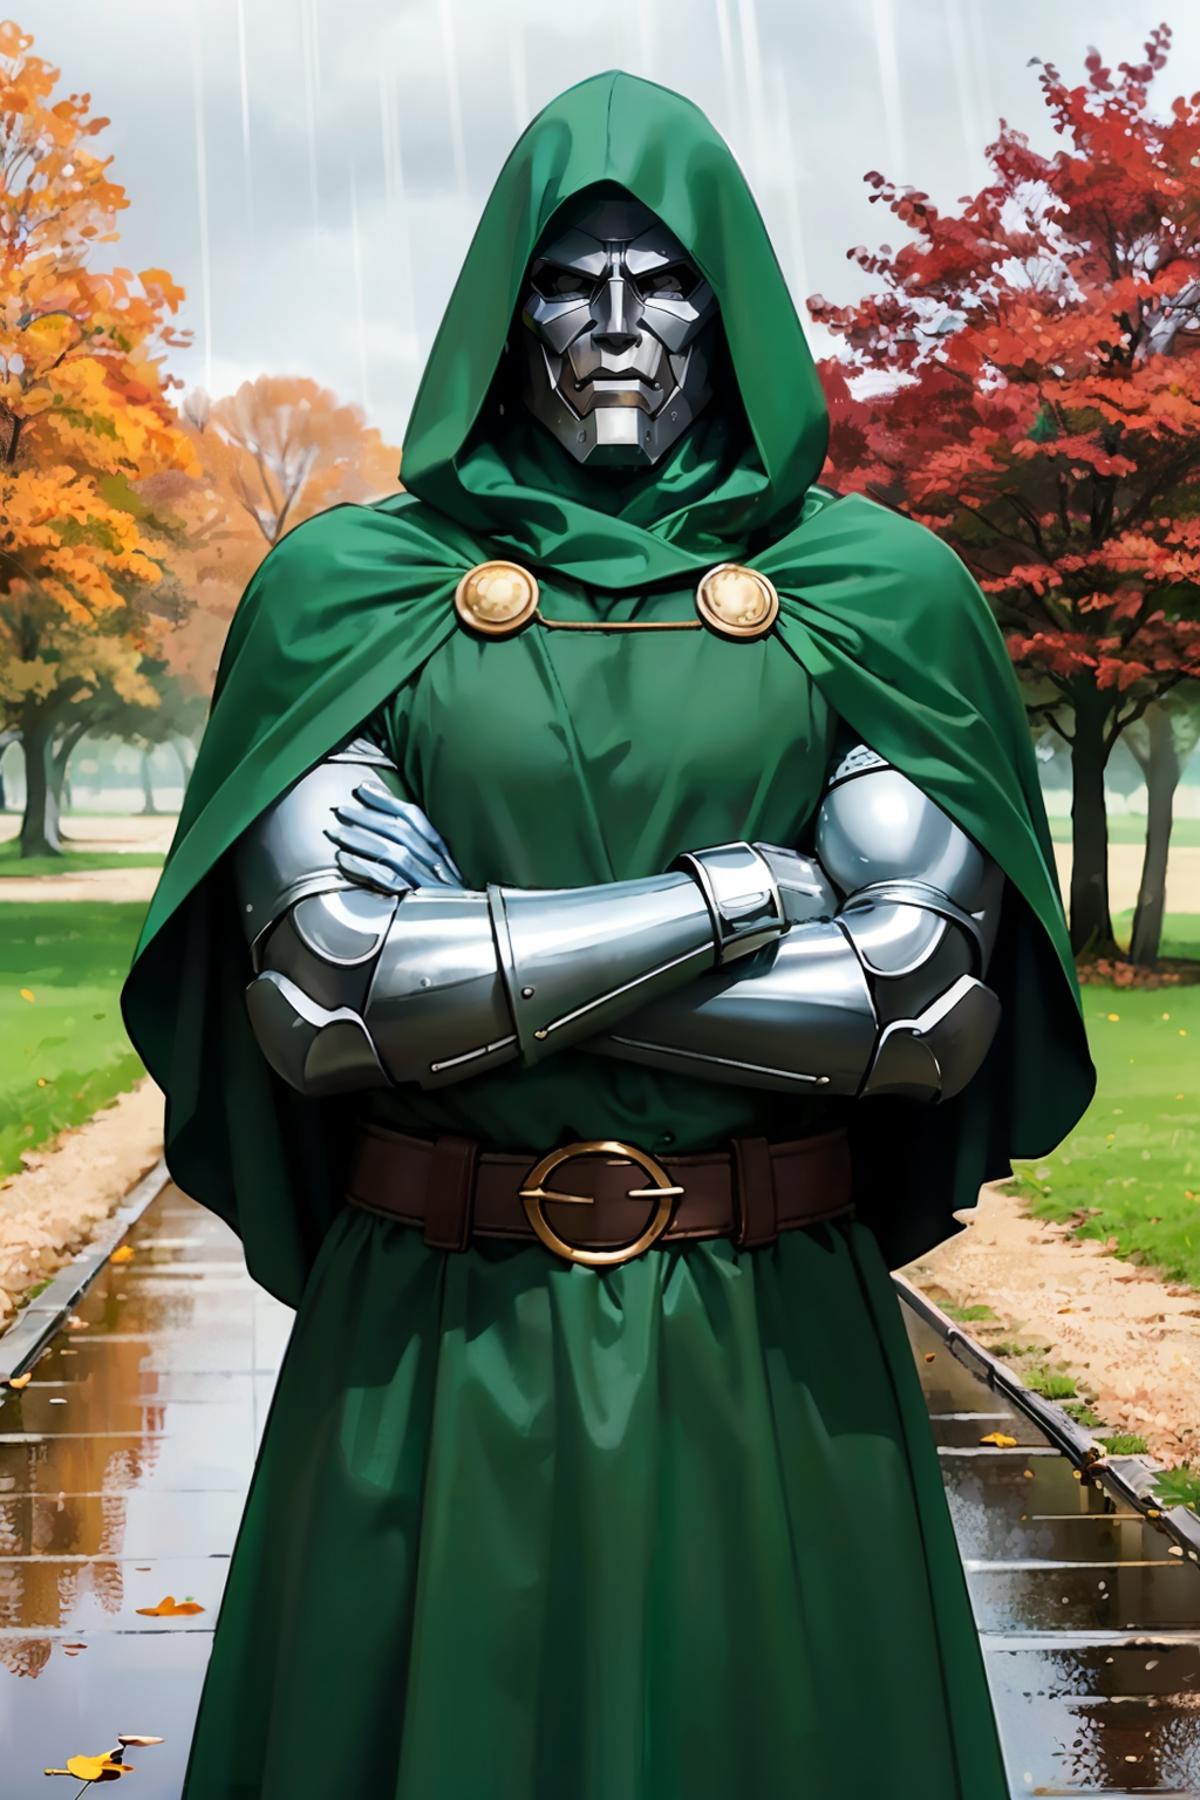 Doctor Doom from Marvel Comics image by wikkitikki